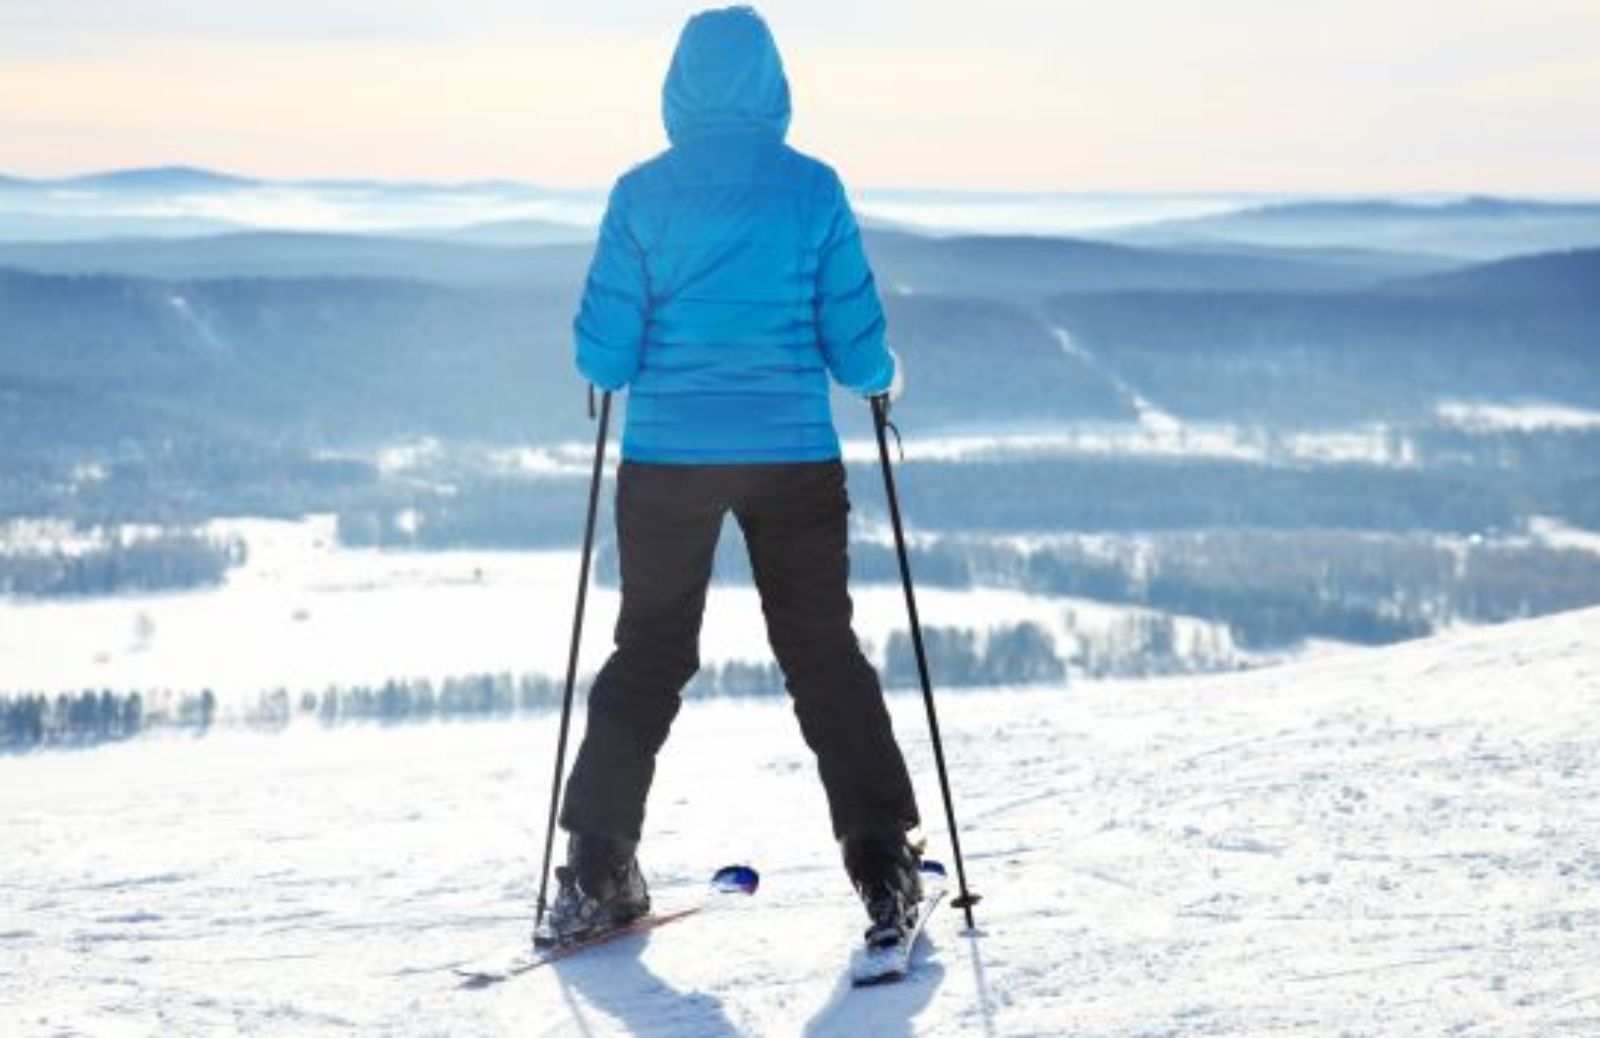 Come imparare a sciare: stare sugli sci